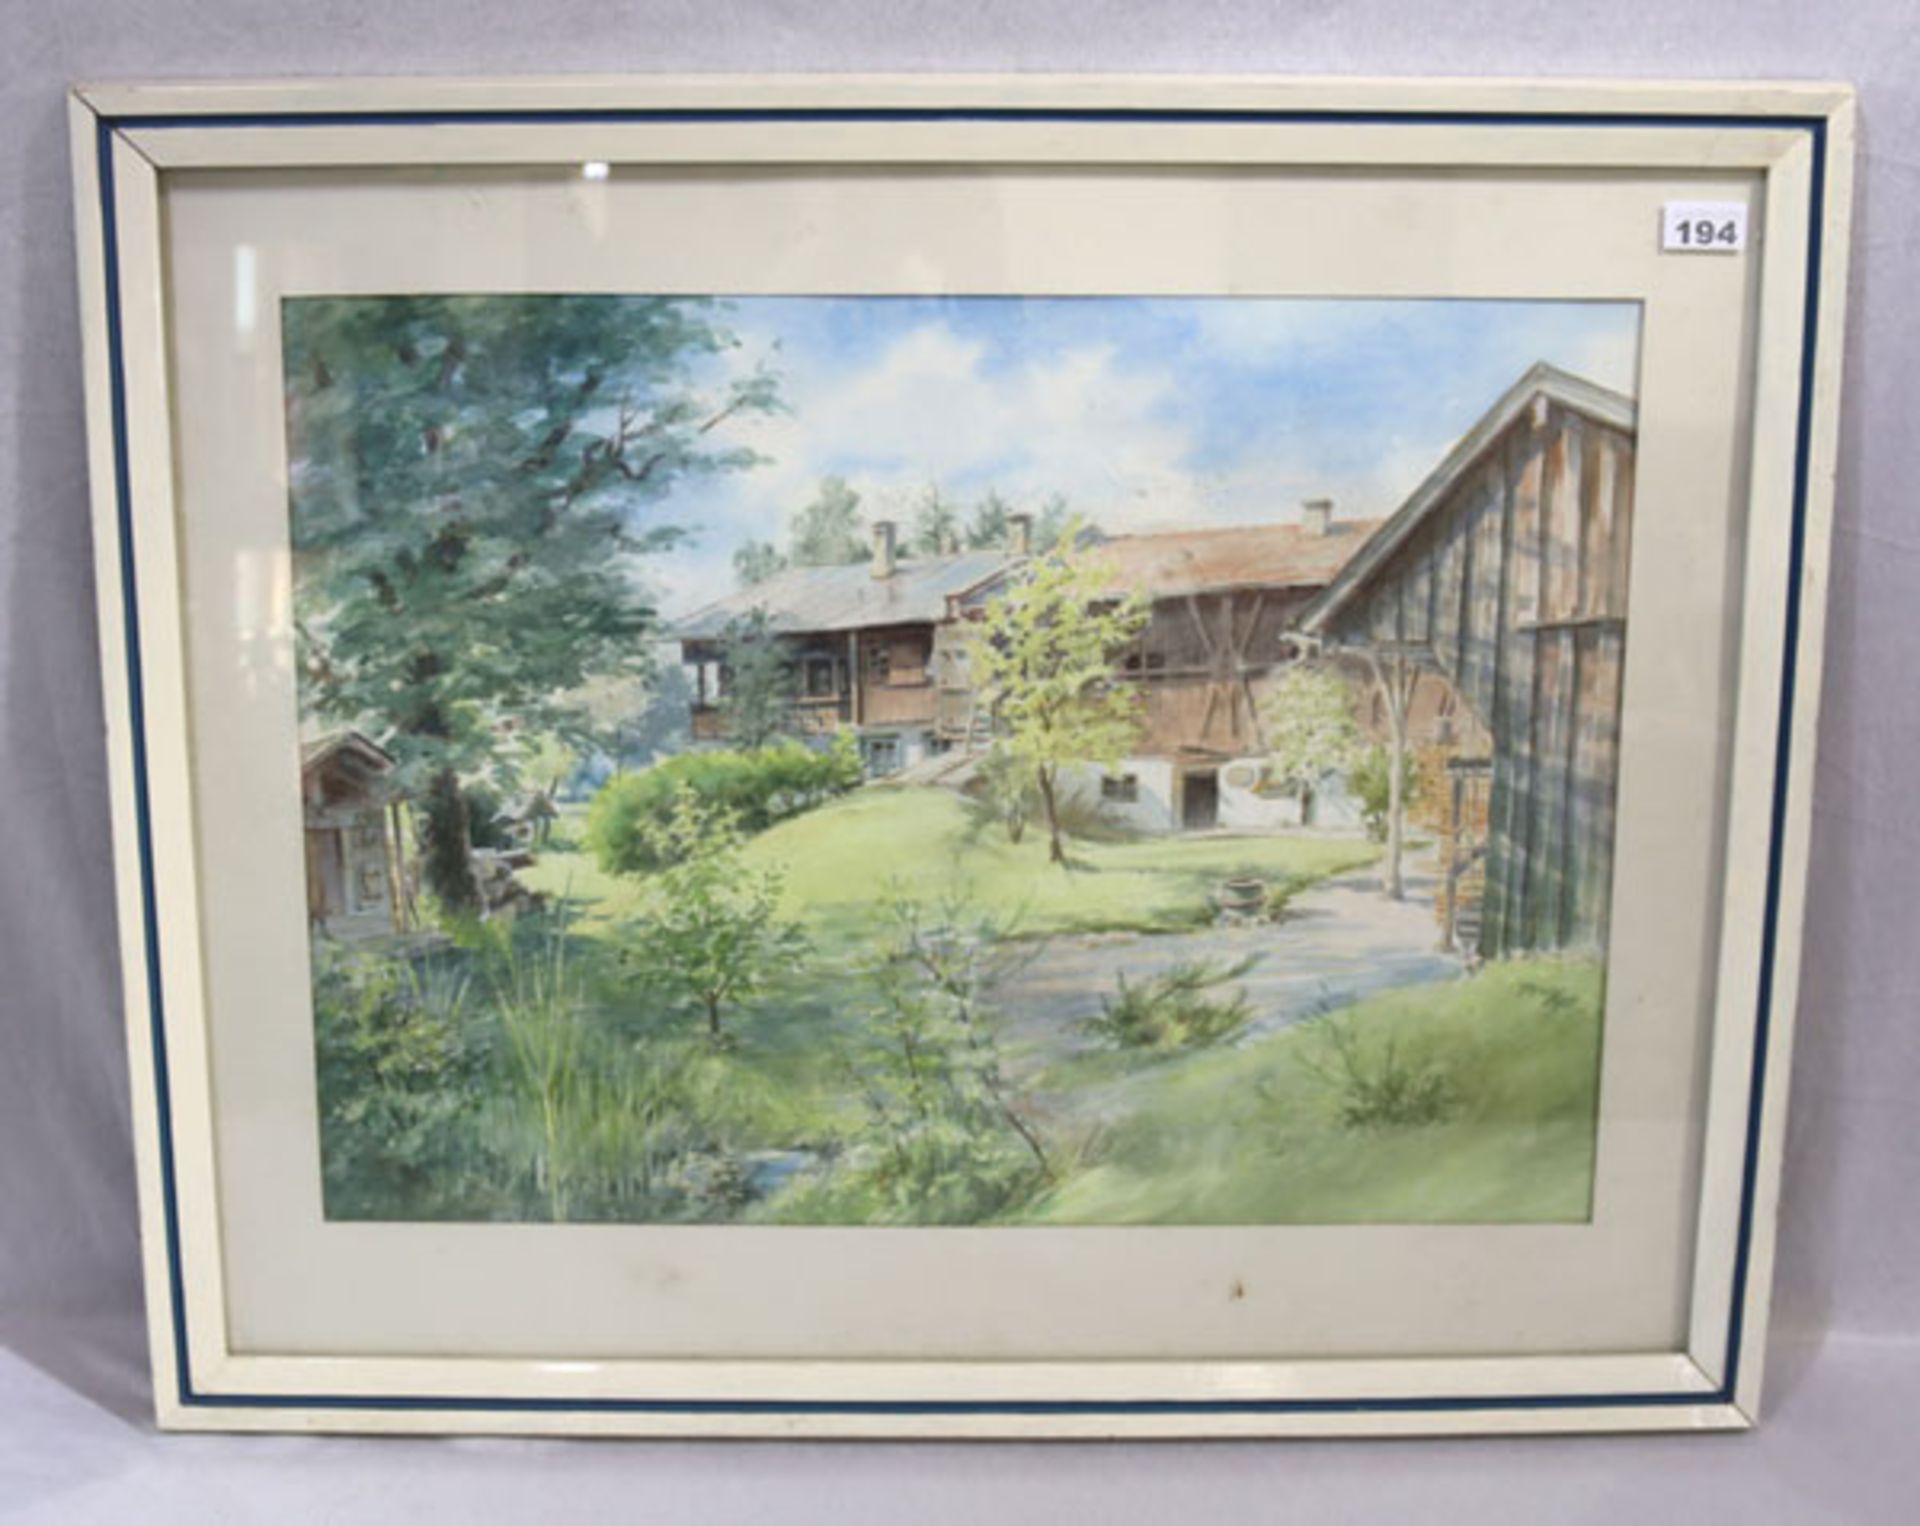 Aquarell 'Bauernhof', signiert Pruy 90, mit Passepartout unter Glas gerahmt, Rahmen bestossen, incl.